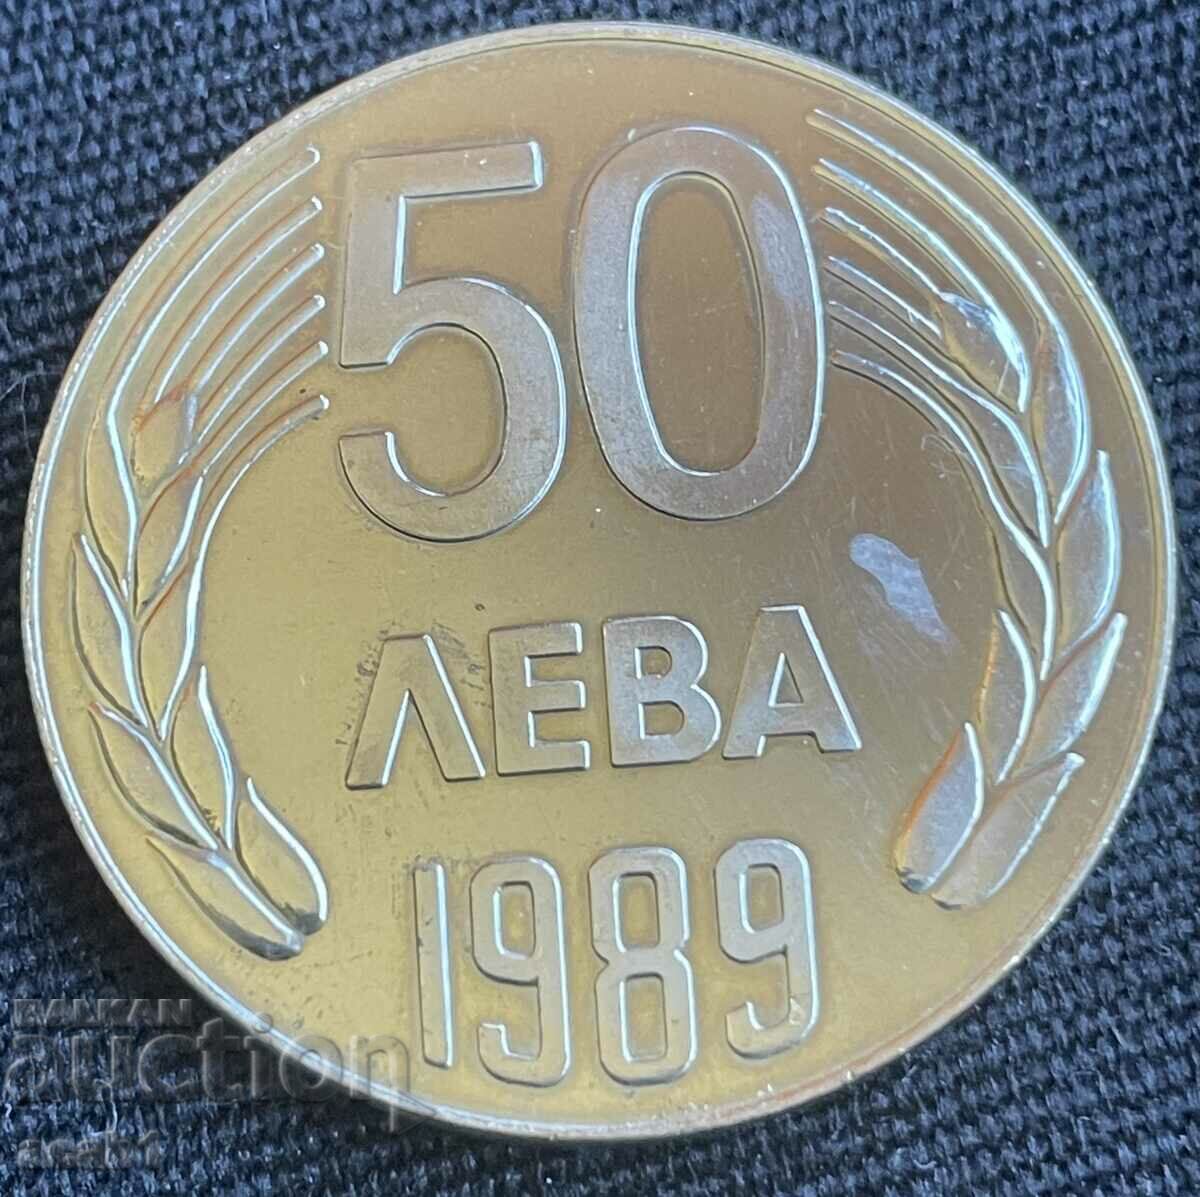 50 лева 1989/5